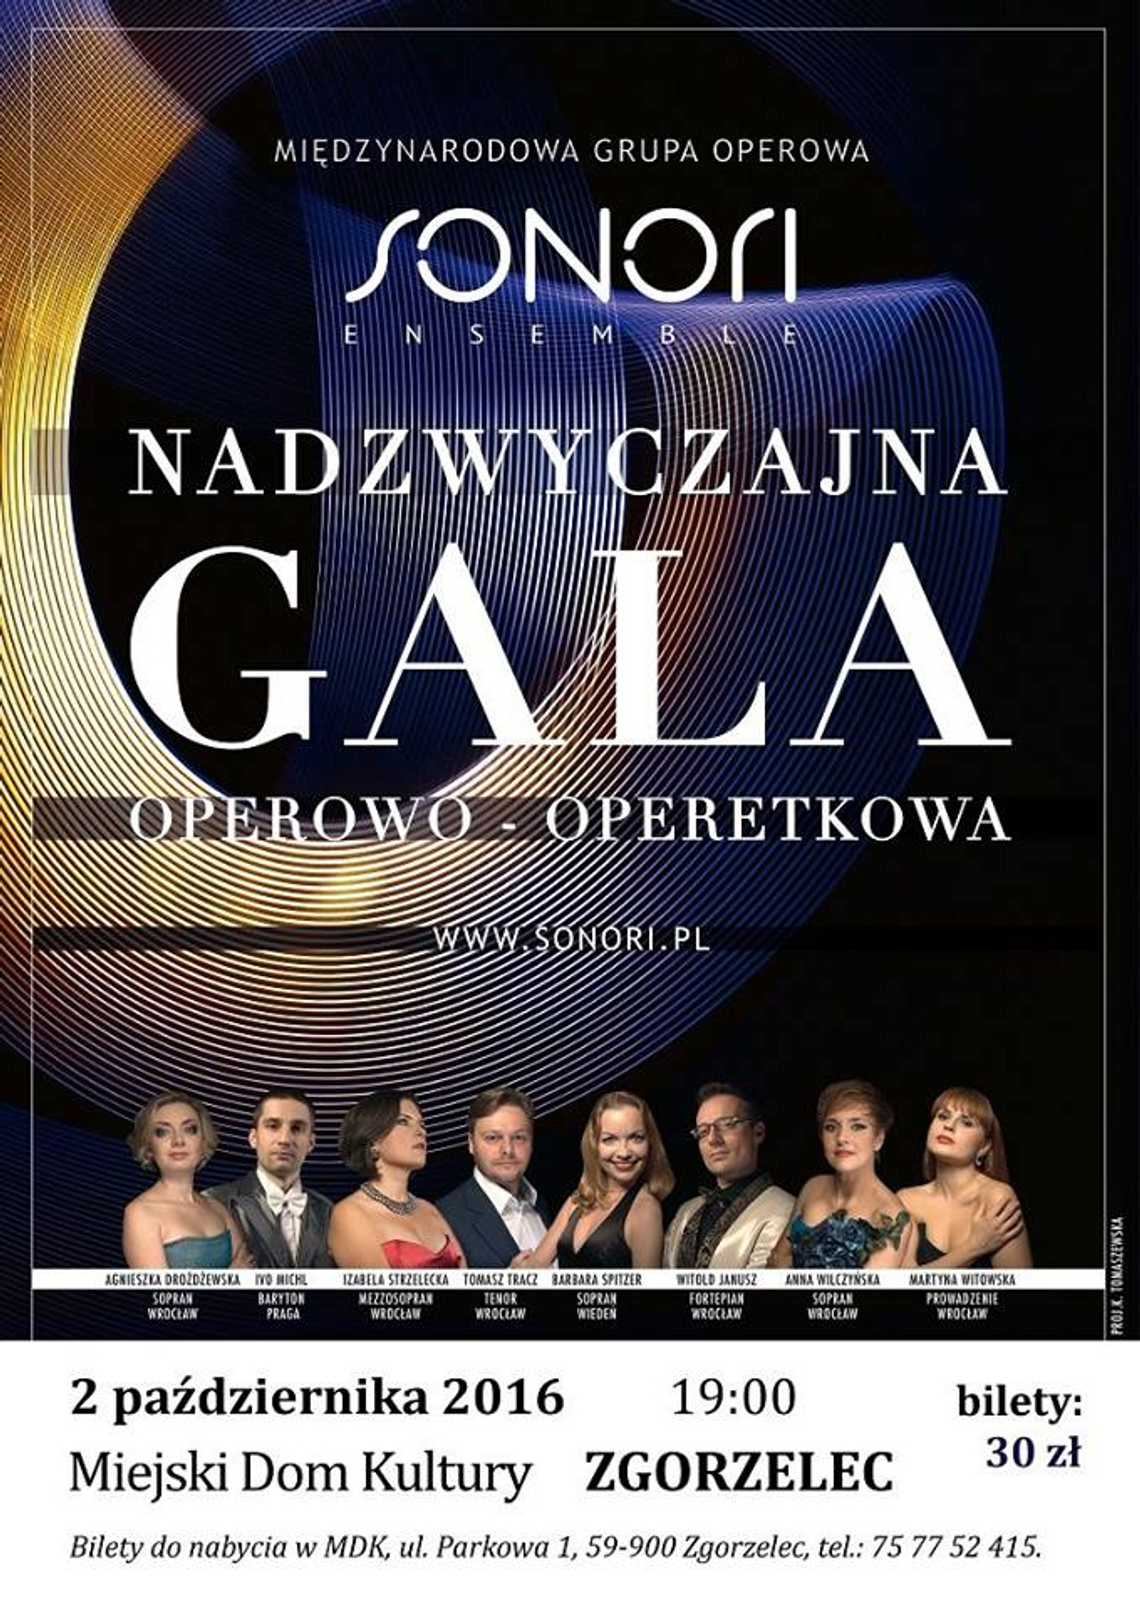 Nadzwyczajna Gala Operowo-operetkowa w Zgorzelcu